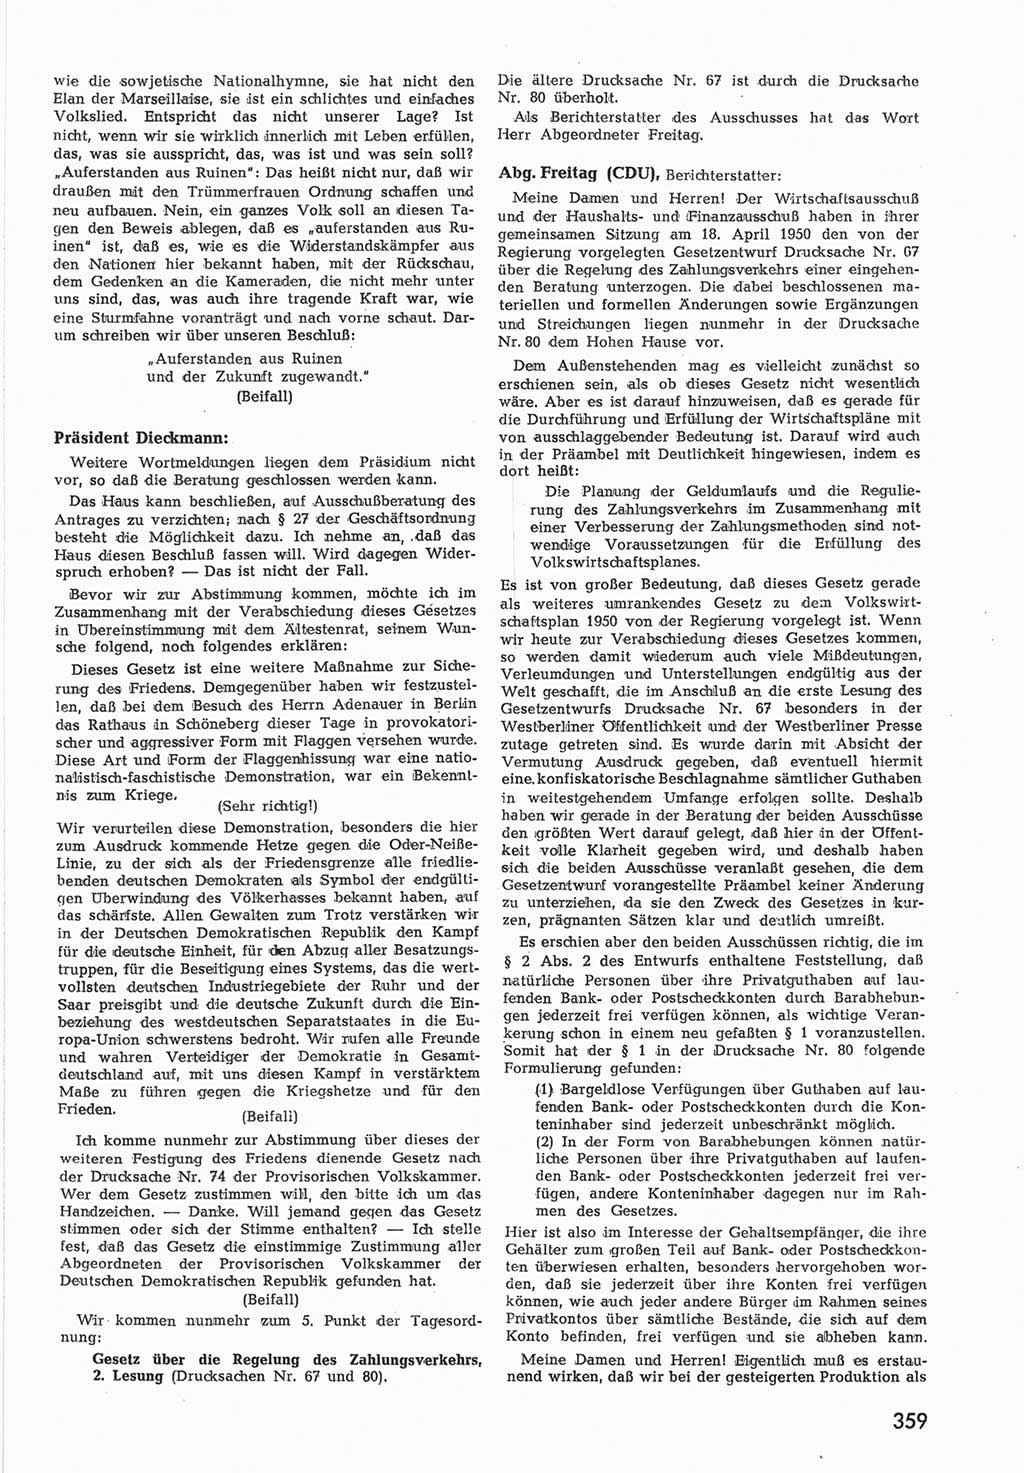 Provisorische Volkskammer (VK) der Deutschen Demokratischen Republik (DDR) 1949-1950, Dokument 375 (Prov. VK DDR 1949-1950, Dok. 375)